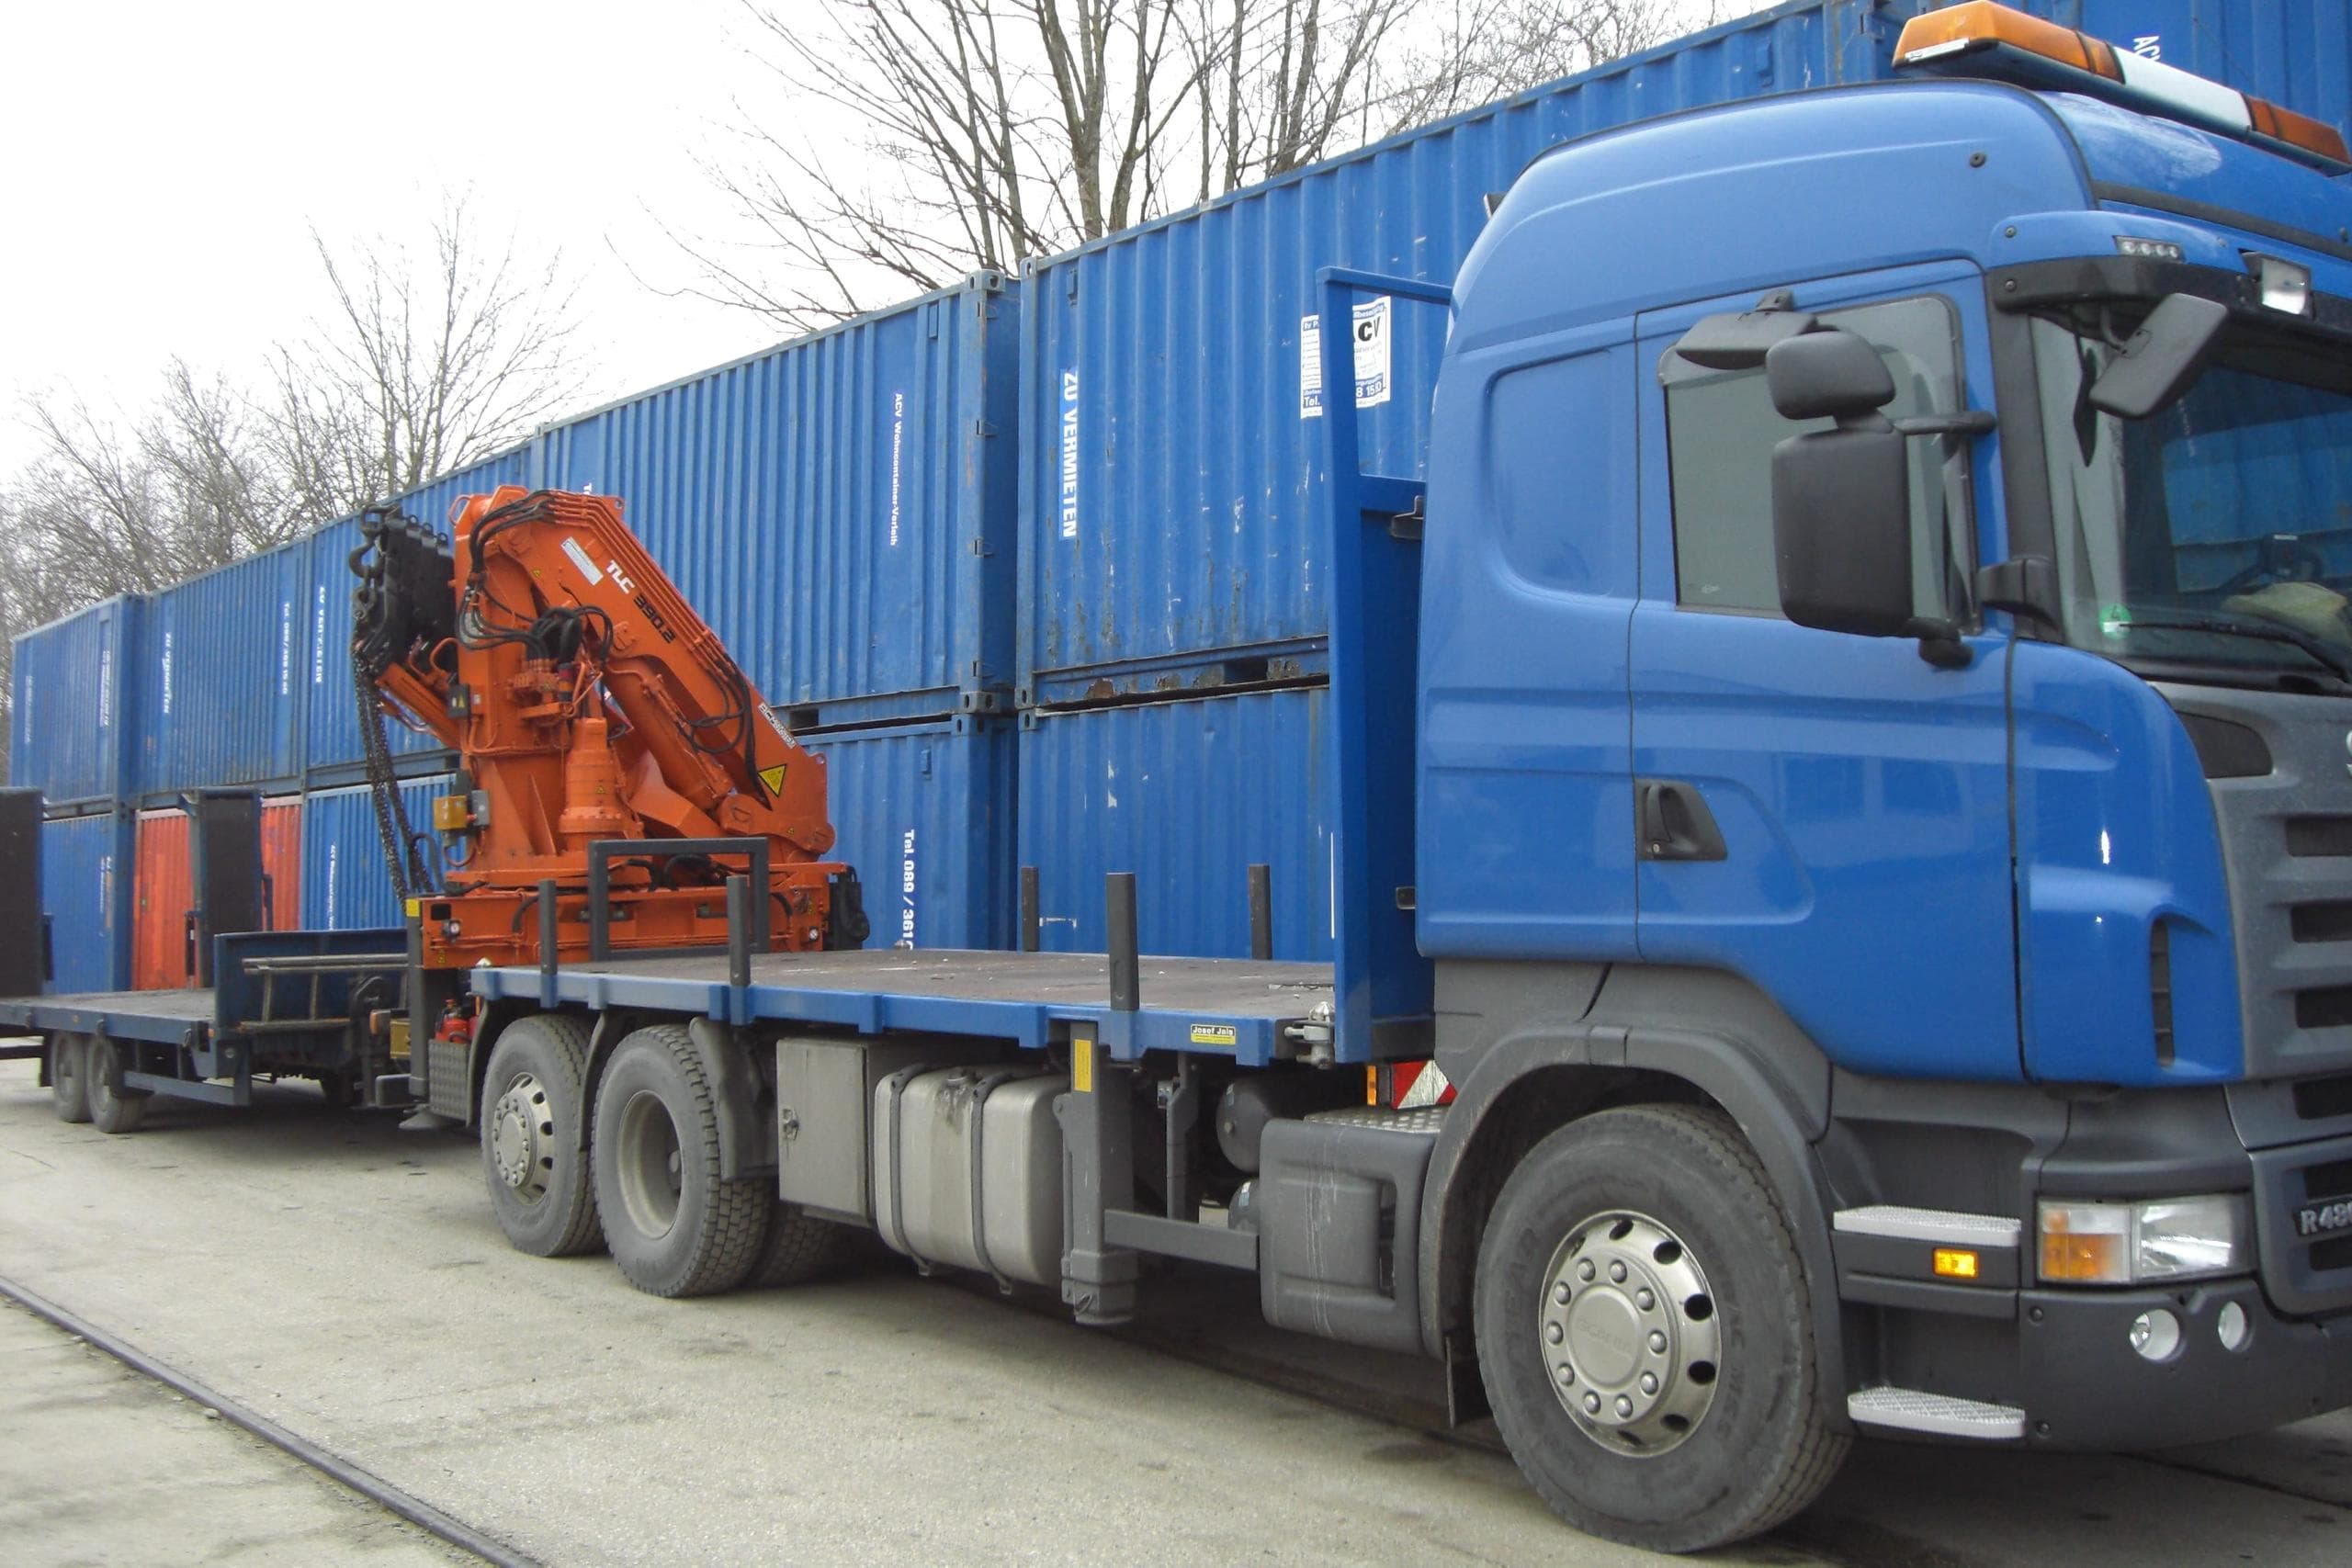 ACV Wohncontainer ausleihen - LKW zur Containerlieferung und blaue Wohncontainer